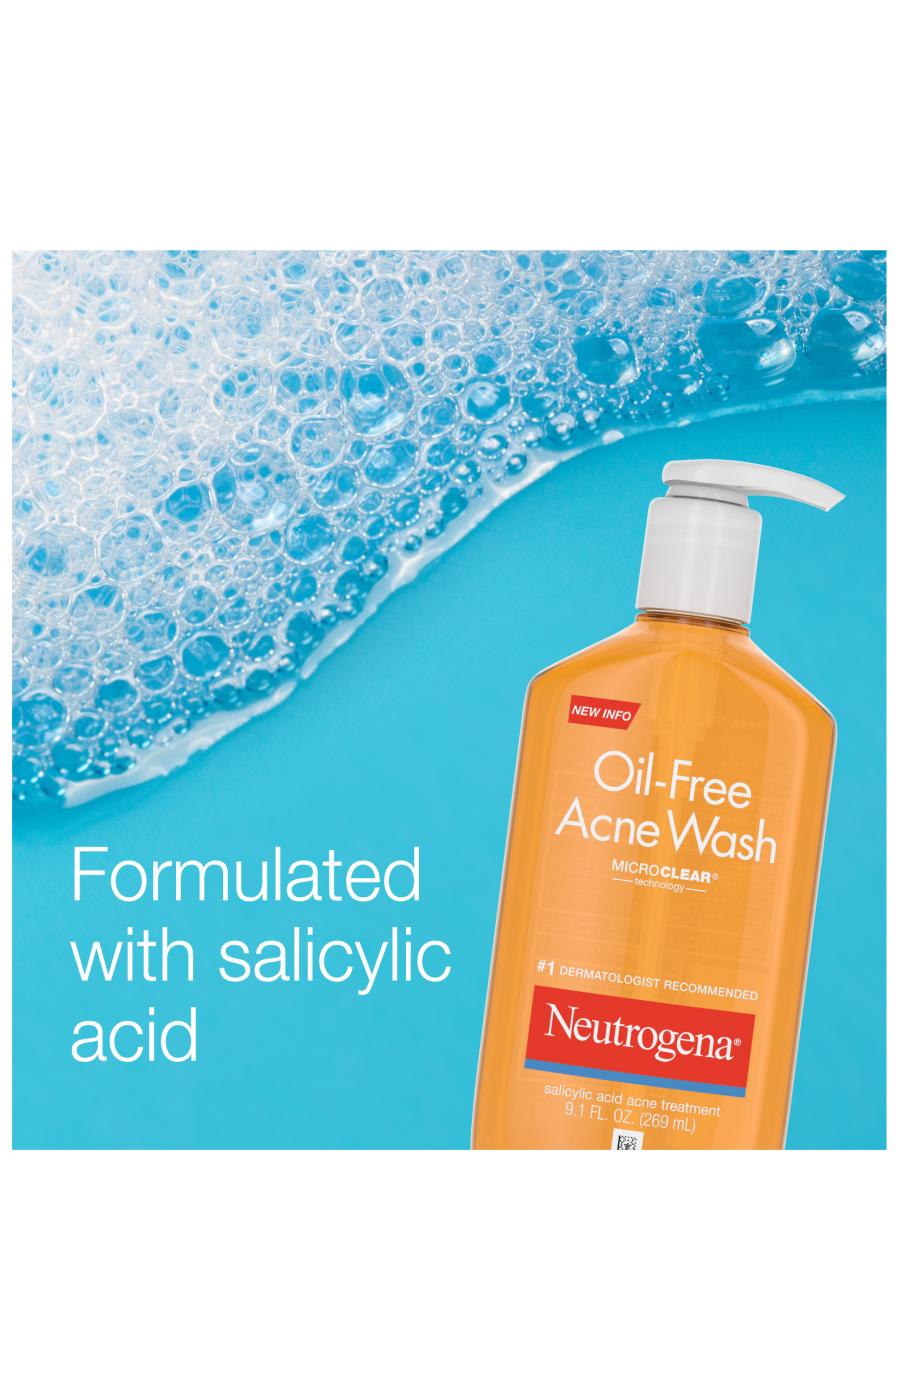 Neutrogena Oil-Free Acne Wash; image 2 of 8